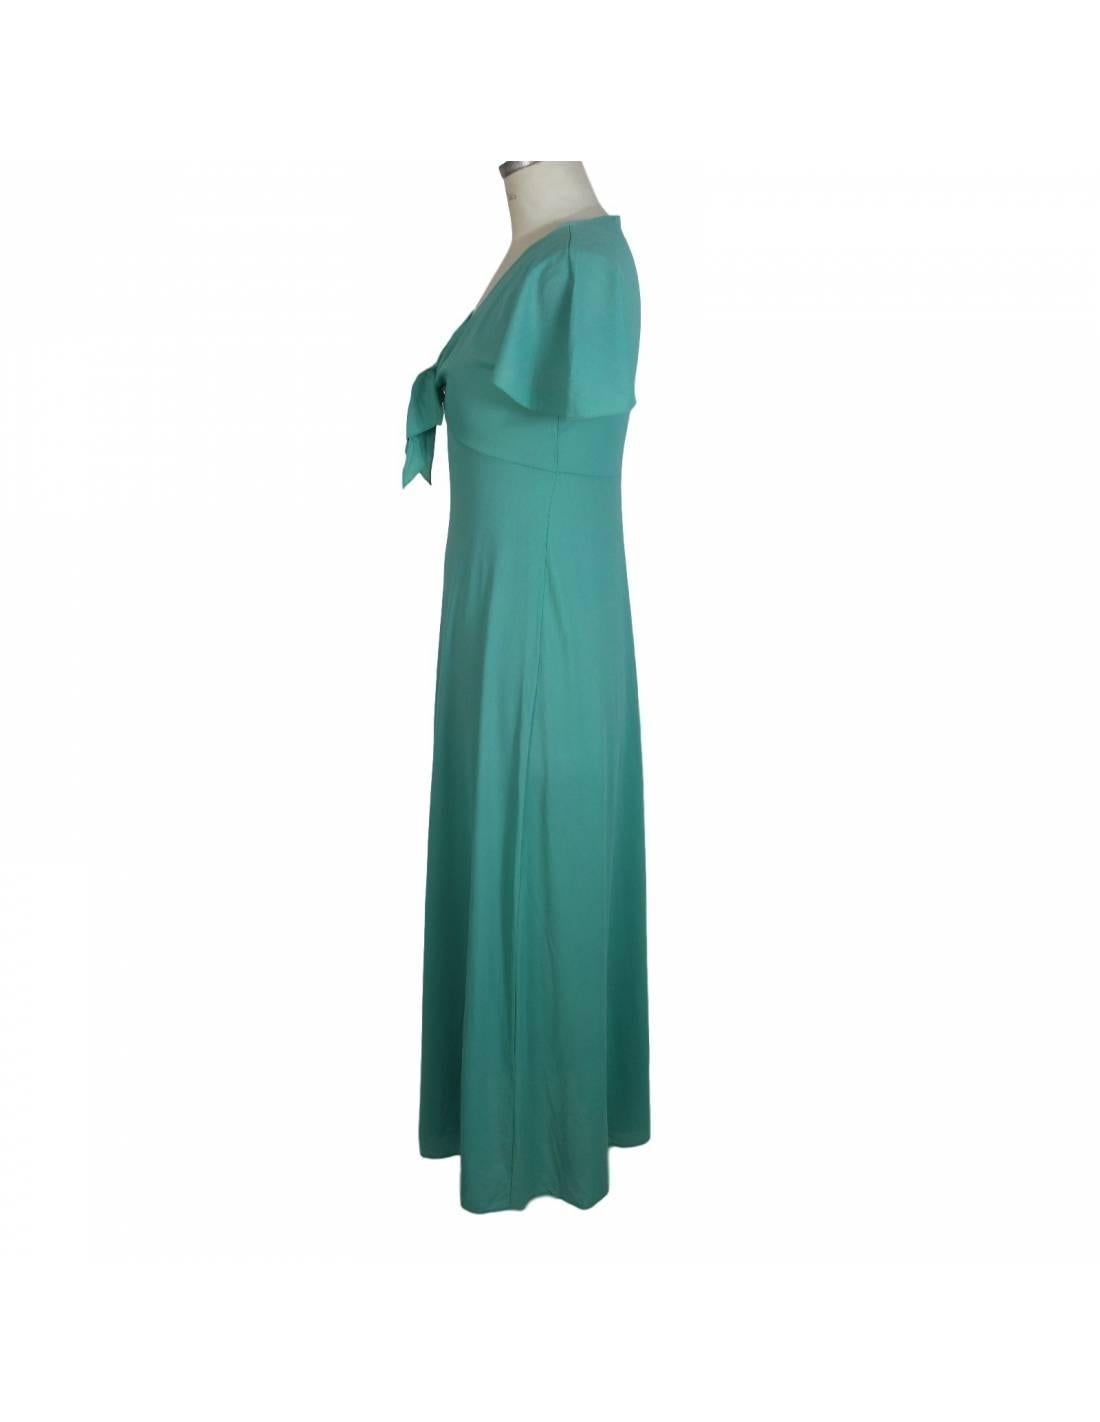 Franca Esz Wunster Imec Blue Long Sheath Dress In Good Condition In Brindisi, Bt